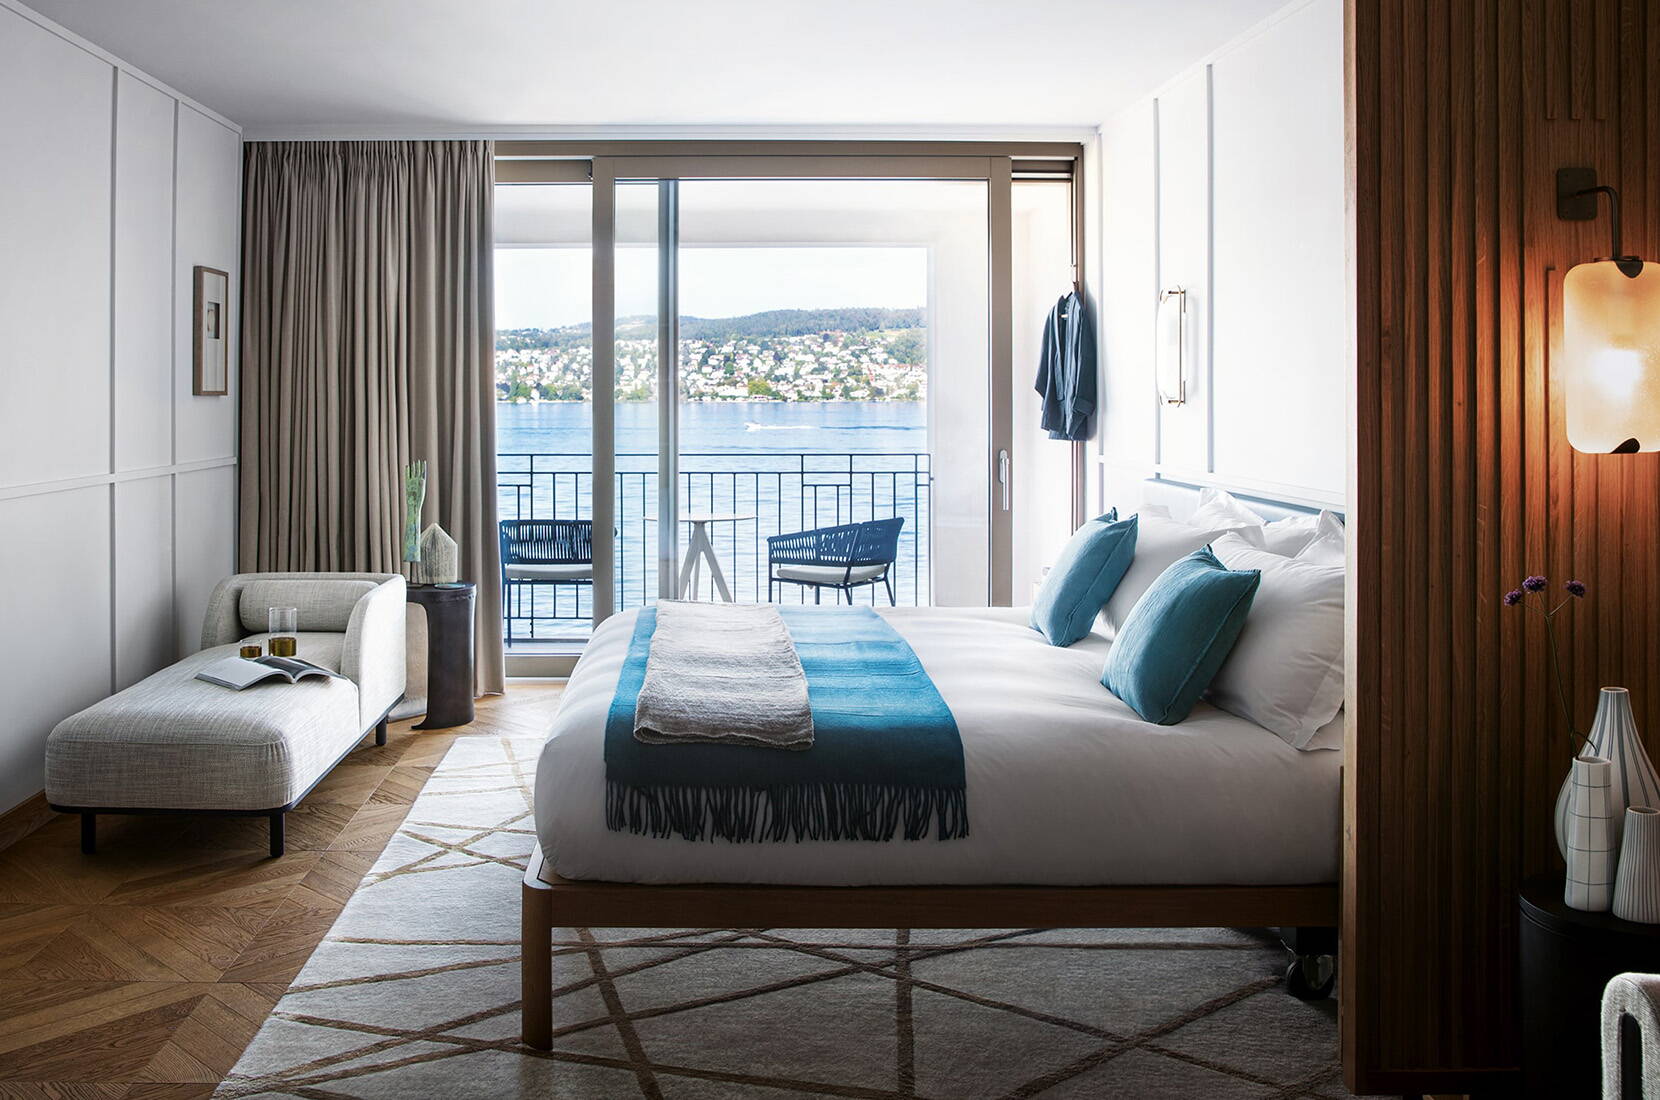 Come membro della HotelCard, potete soggiornare in oltre 500 hotel in Svizzera e nei paesi limitrofi con sconti fino al 50%. Da un accogliente chalet alpino nei Grigioni a un resort a 5 stelle sul Lago di Ginevra, troverete tutto ciò che il vostro cuore di viaggiatore desidera.